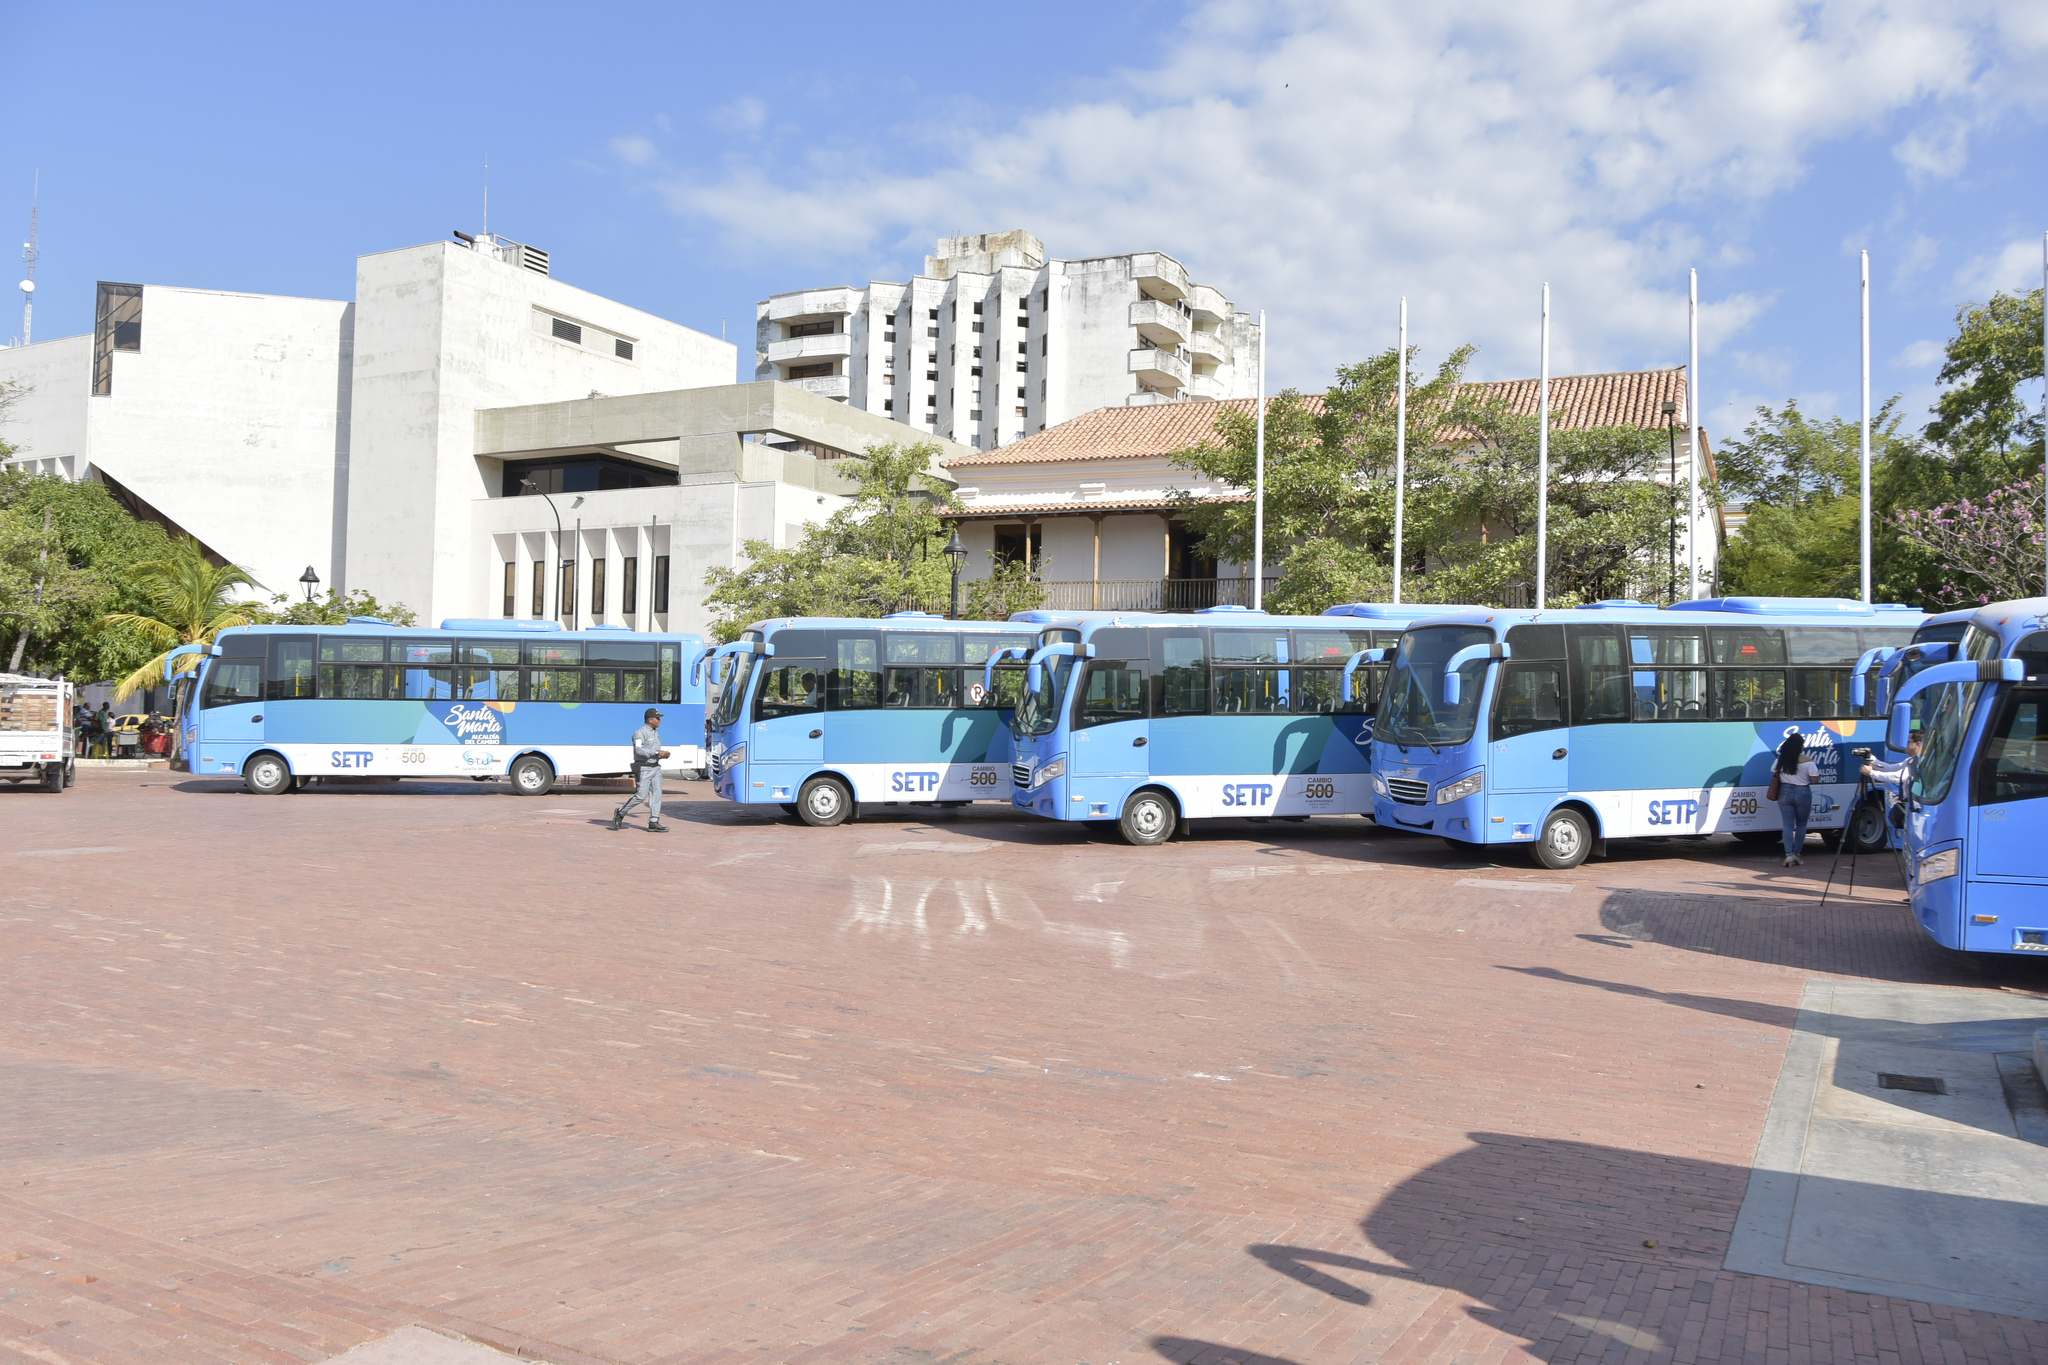 Santa Marta da un paso más hacia un moderno sistema de transporte público colectivo